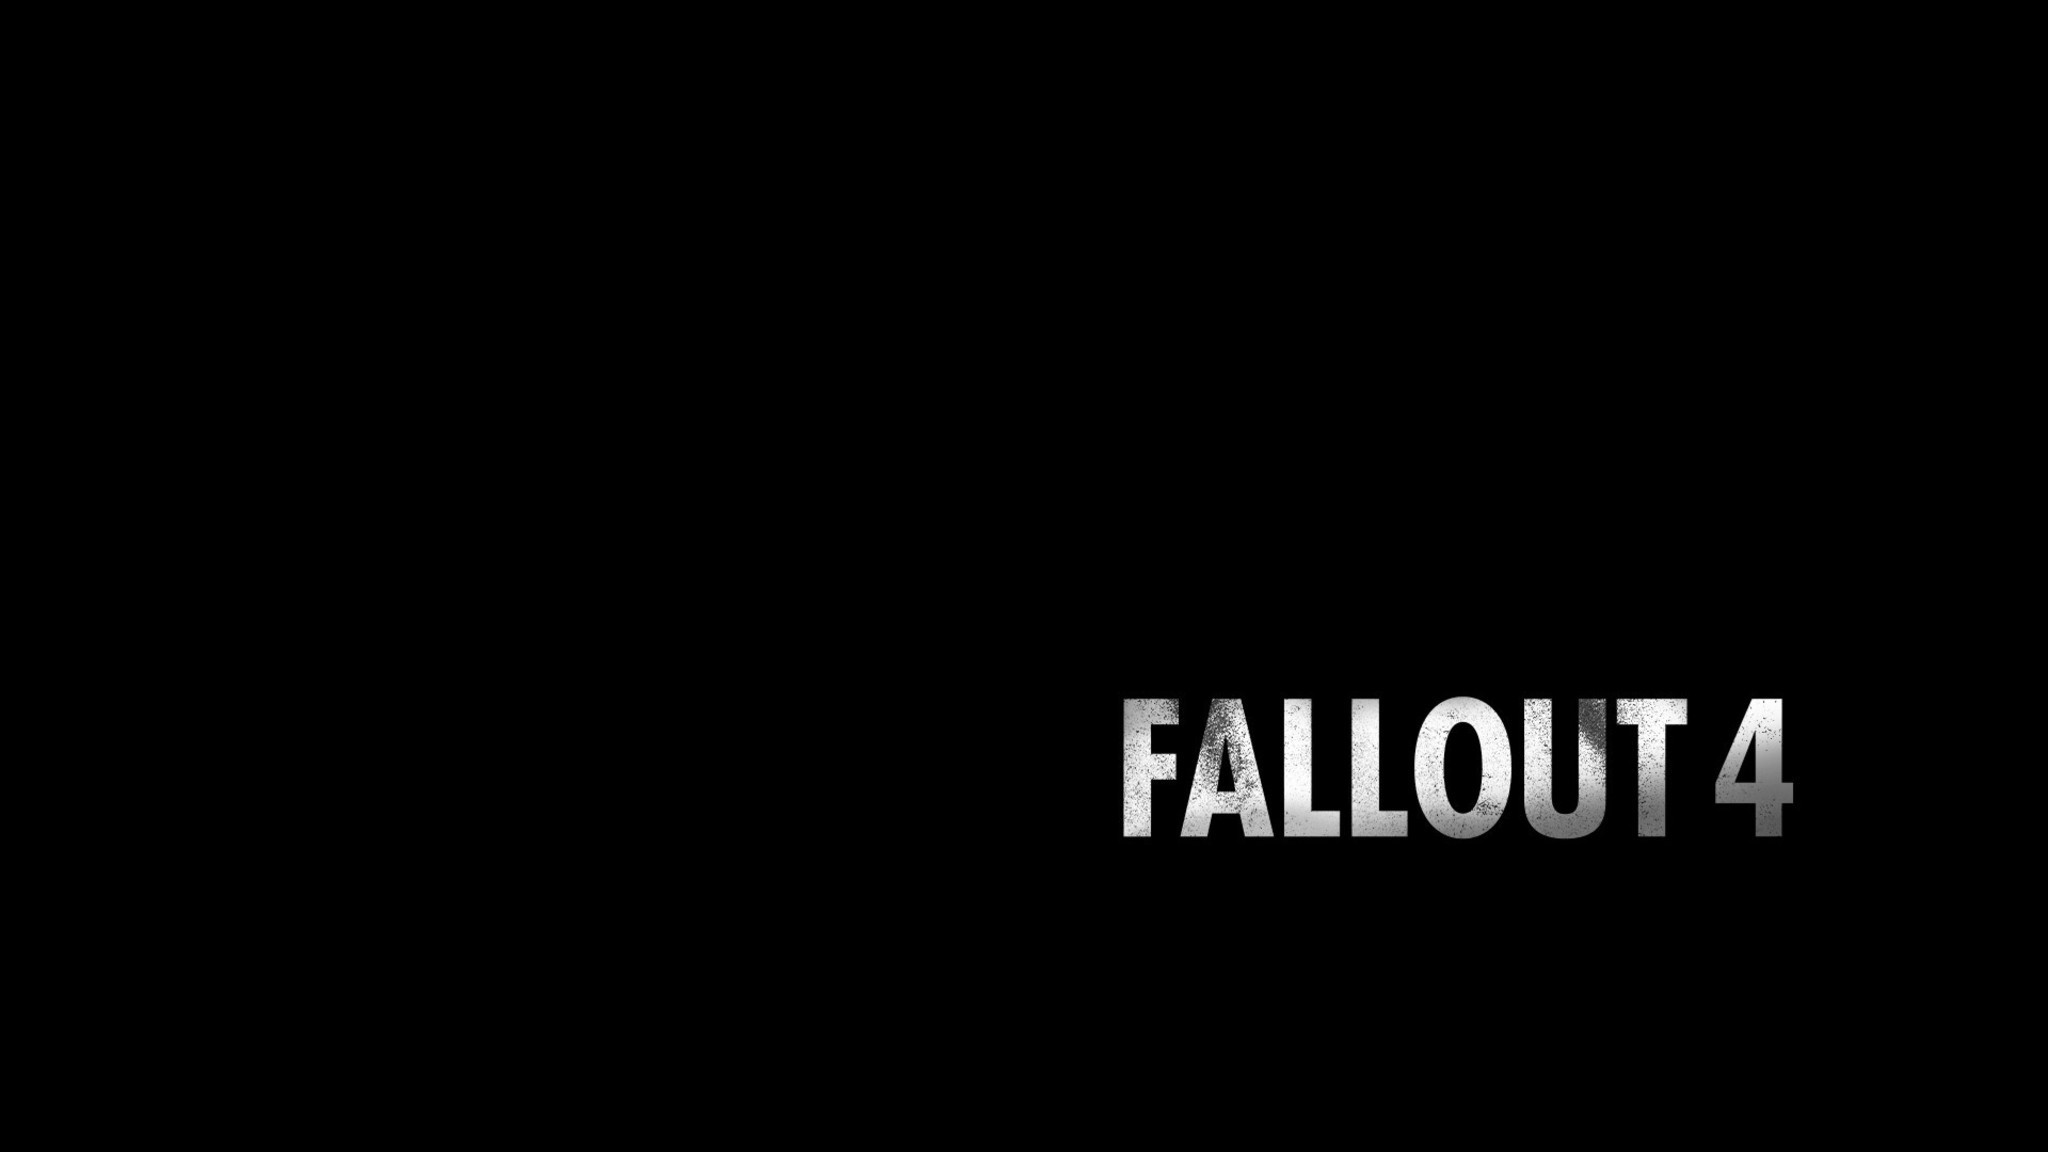 2048x1152 fallout-4-logo-qhd.jpg